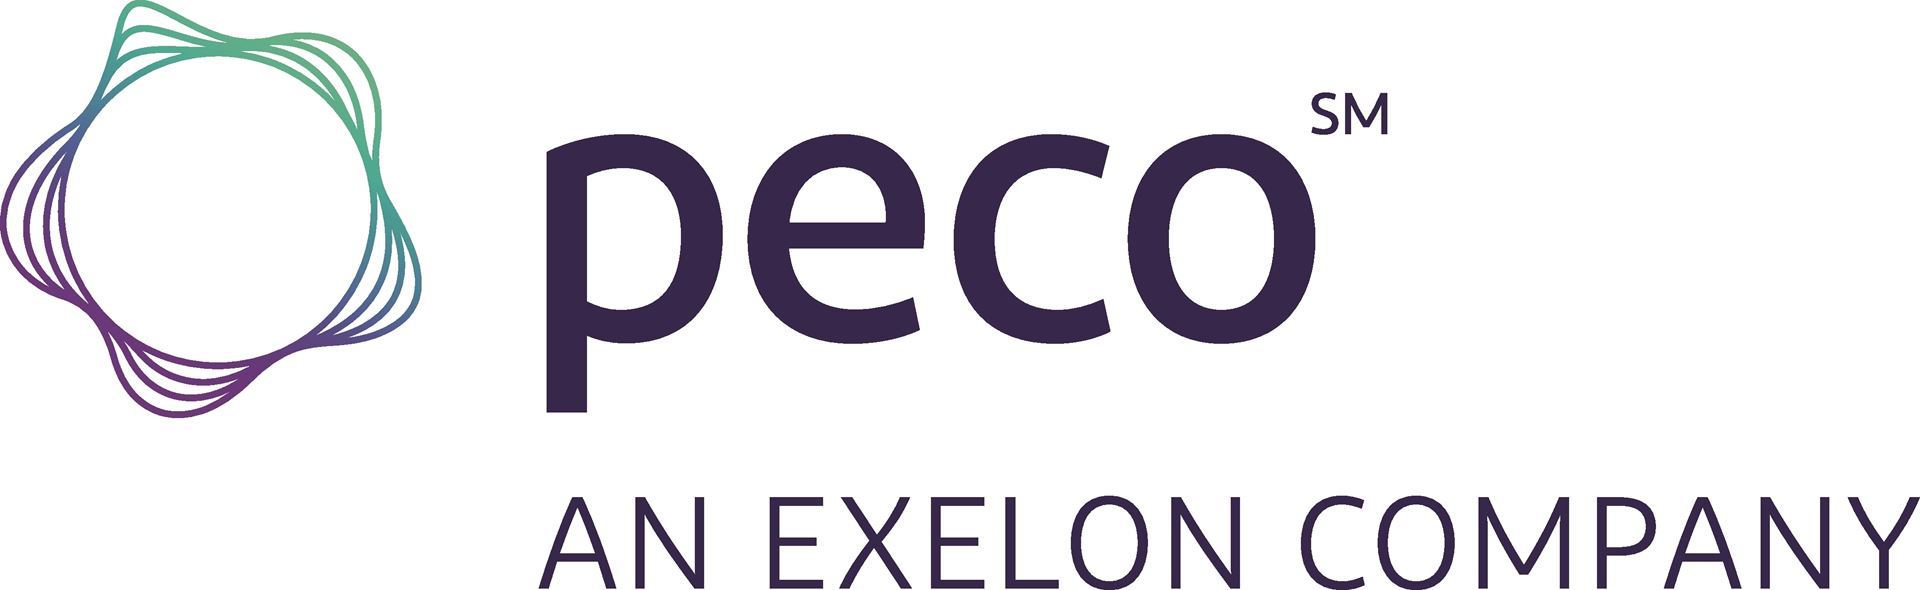 Logo: PECO, An Exelon Company